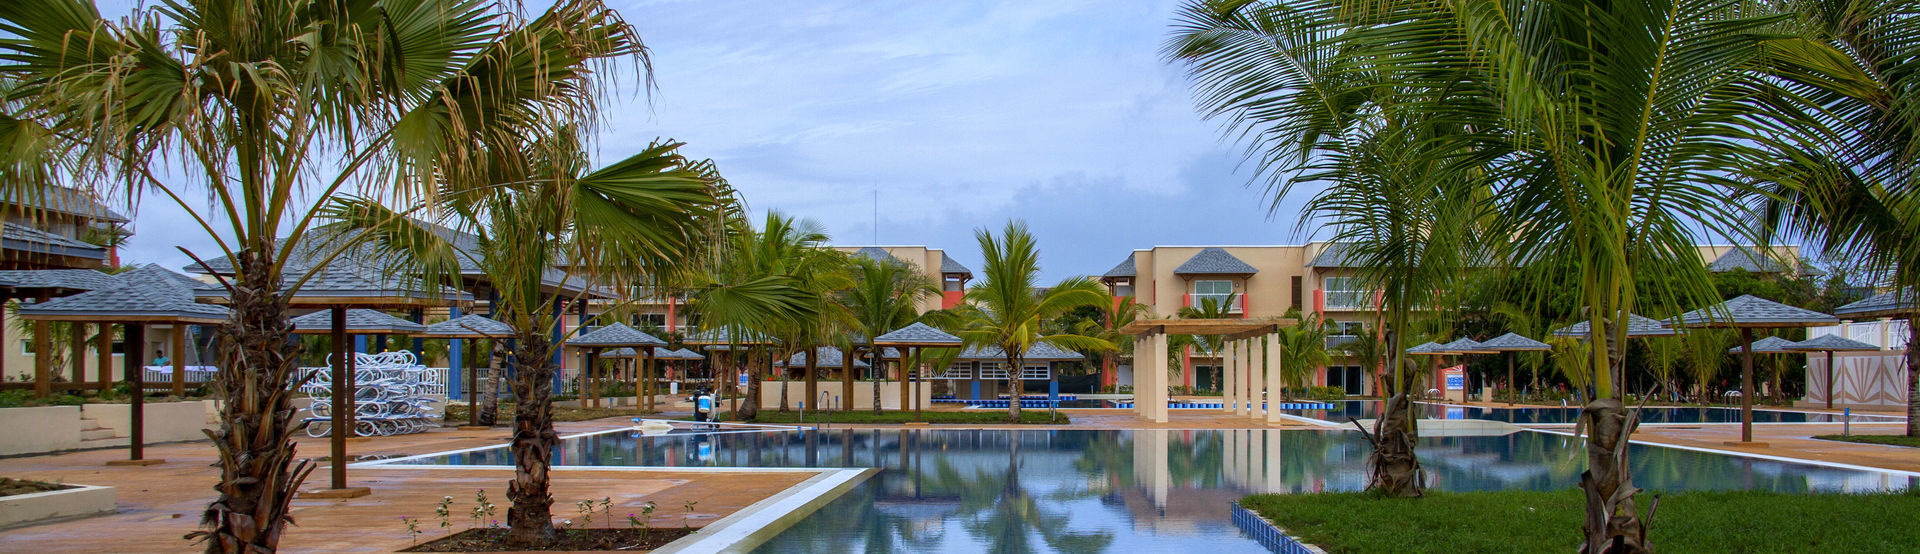 HOTELES - Hoteles en los Cayos de Cuba